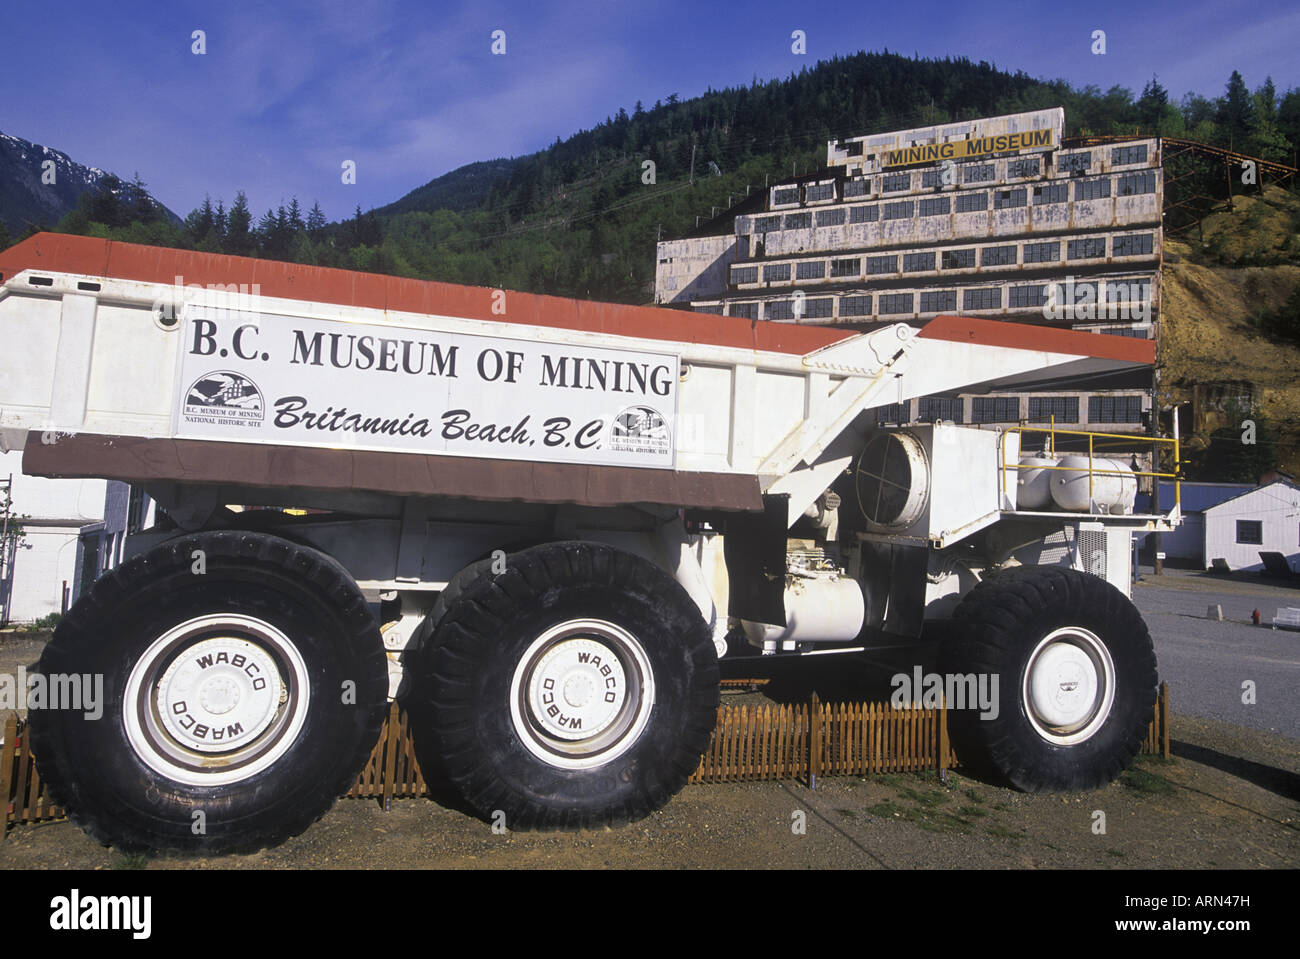 BC Mining Museum, Brittania Beach sur la route 99, le géant minier, British Columbia, Canada. Banque D'Images